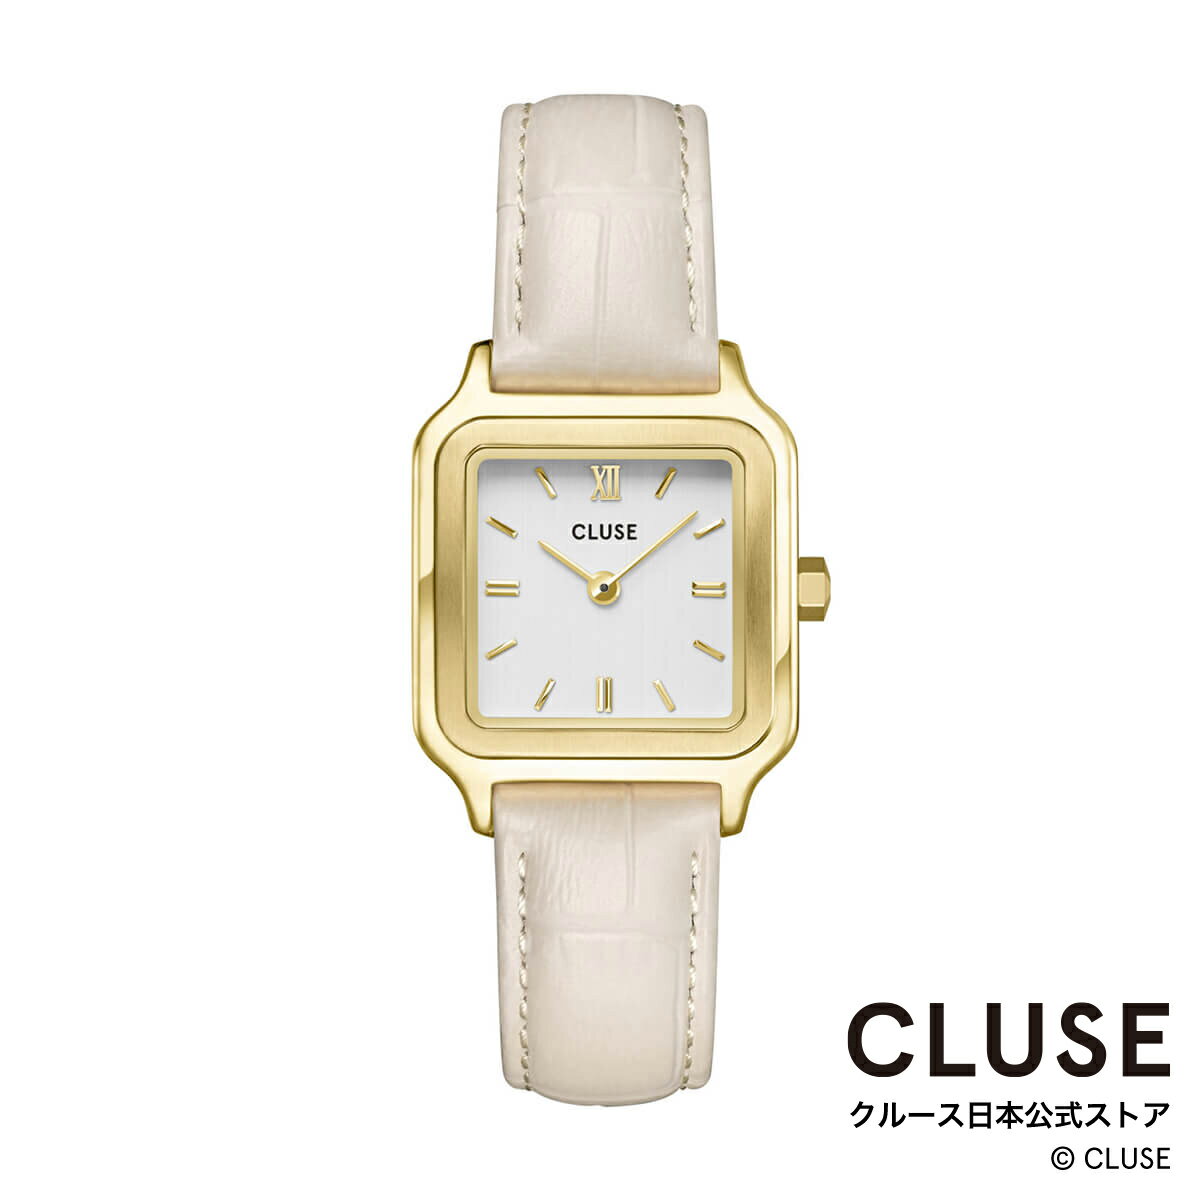 クルース CLUSE 日本公式ストア グラシューズ ペティット クロコ レザー マシュマロ ホワイト ゴールド レディース 女性 腕時計 時計 防水 クォーツ